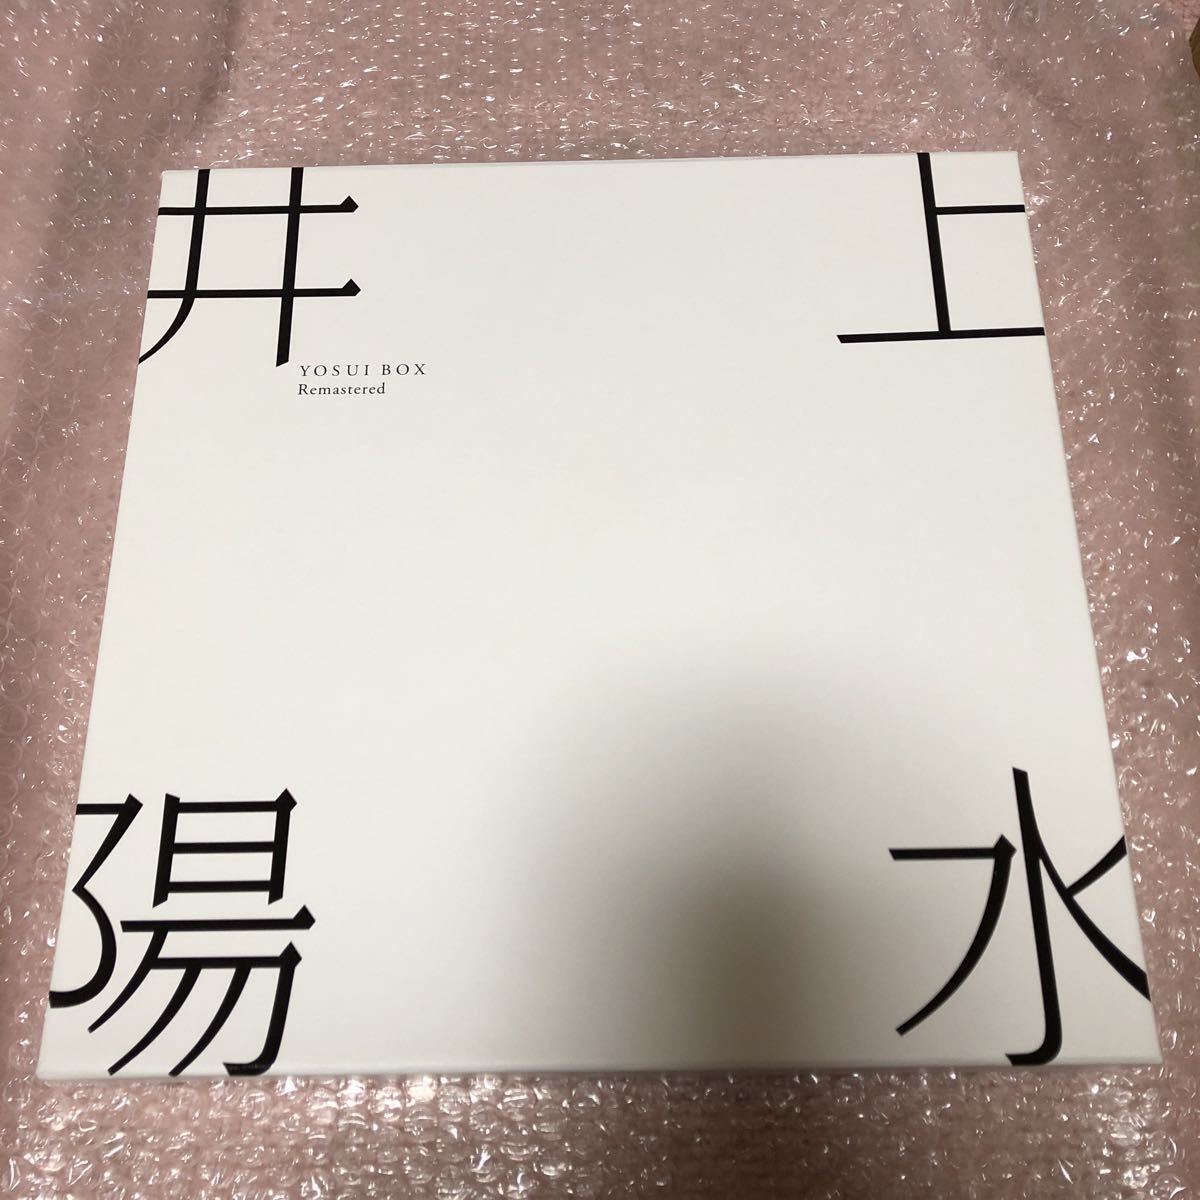 井上陽水 BOX(中古/送料無料)のヤフオク落札情報